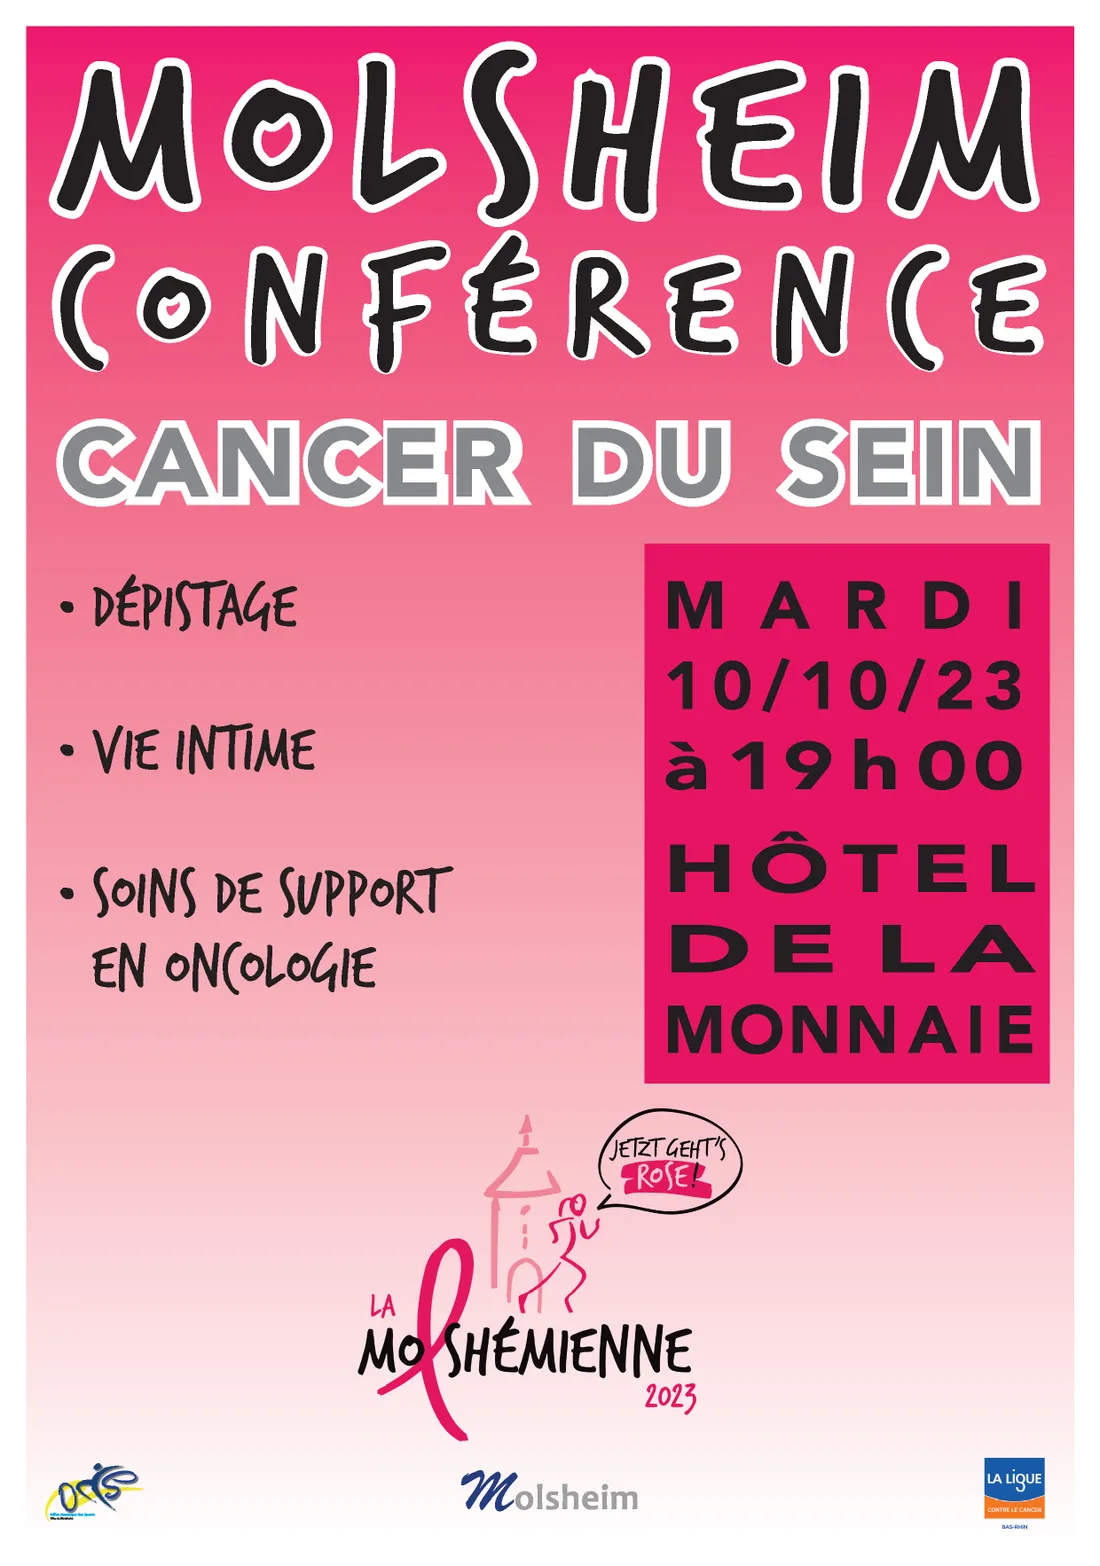 Conférence sur le cancer du sein - Dans le cadre de la Molshémienne